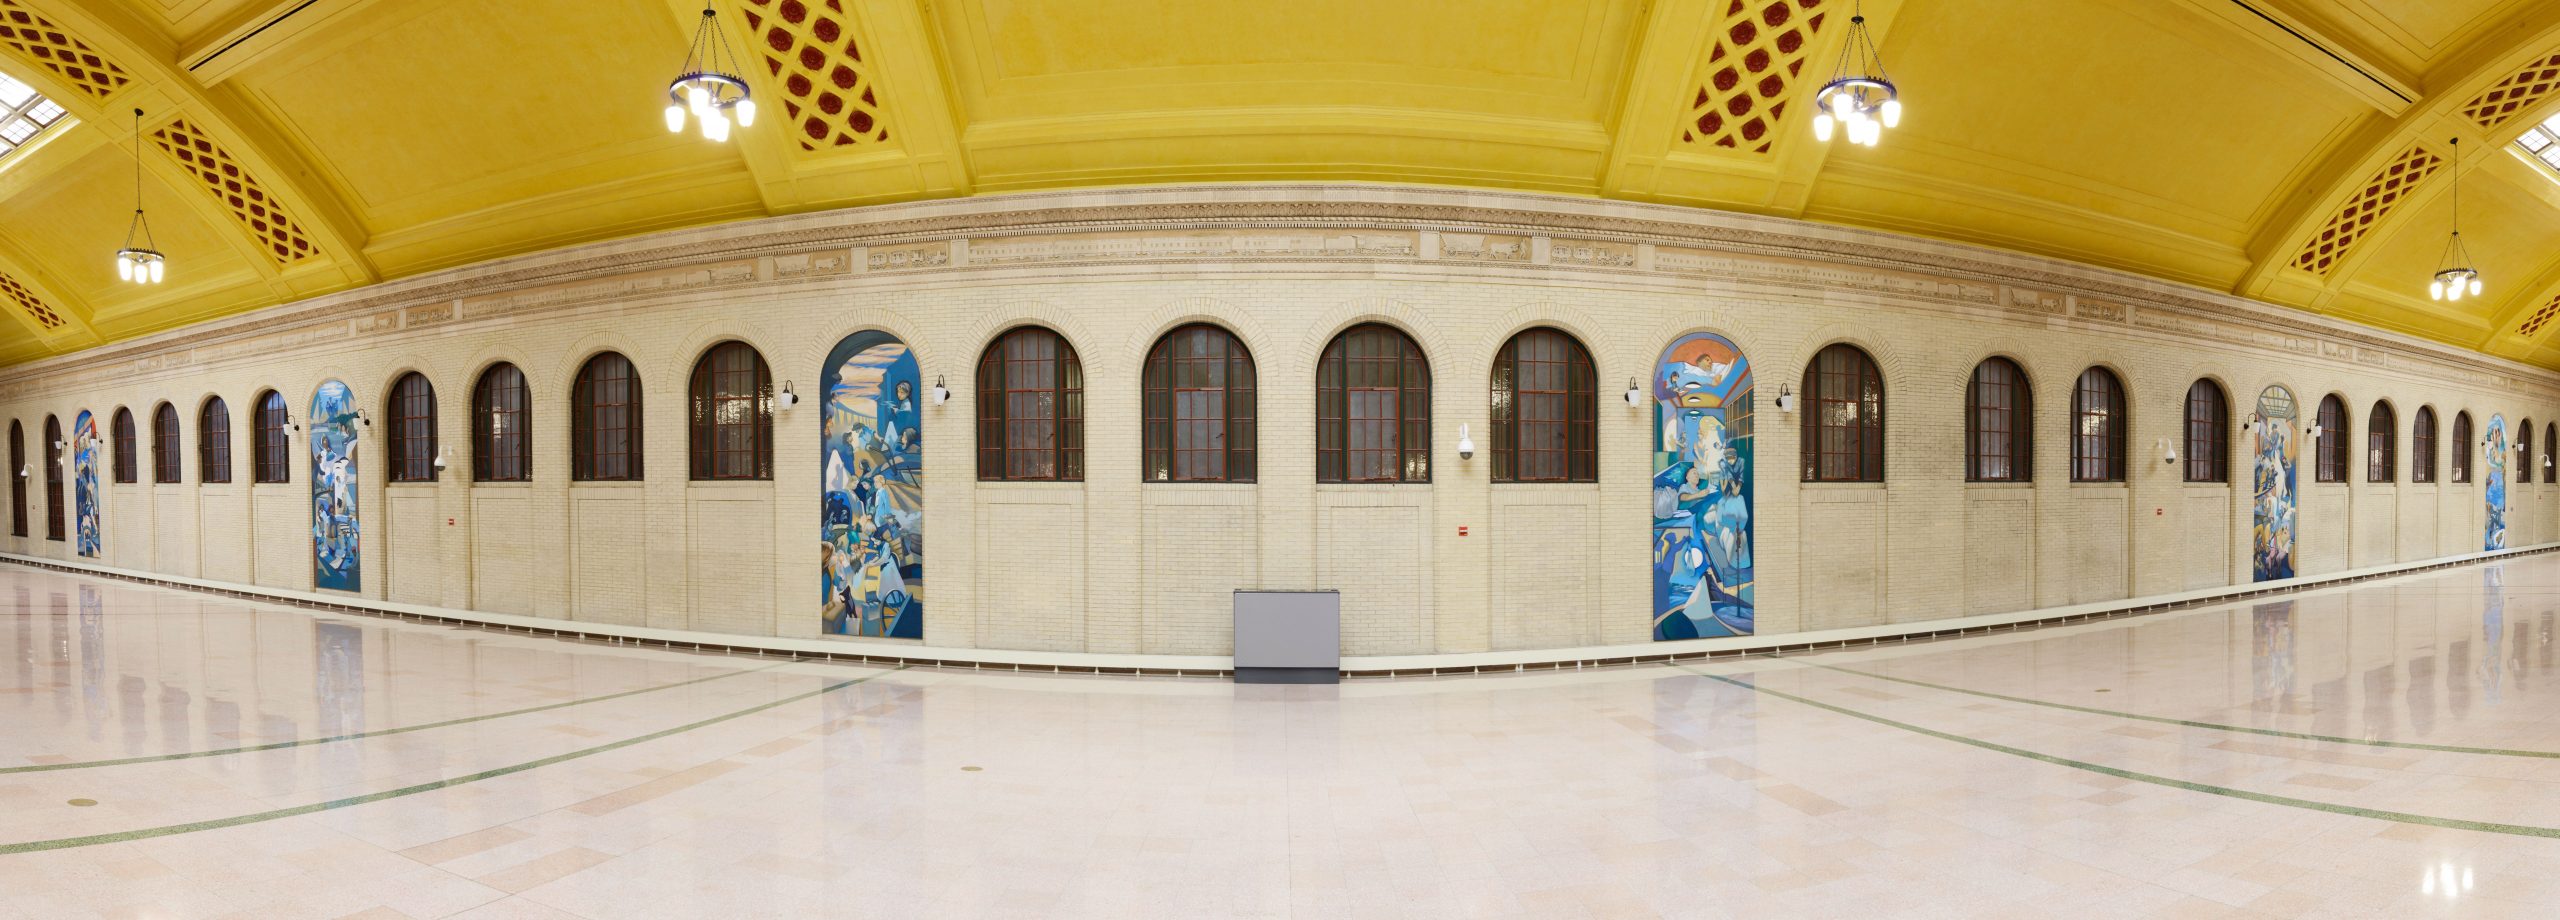 St. Paul Union Depot Murals